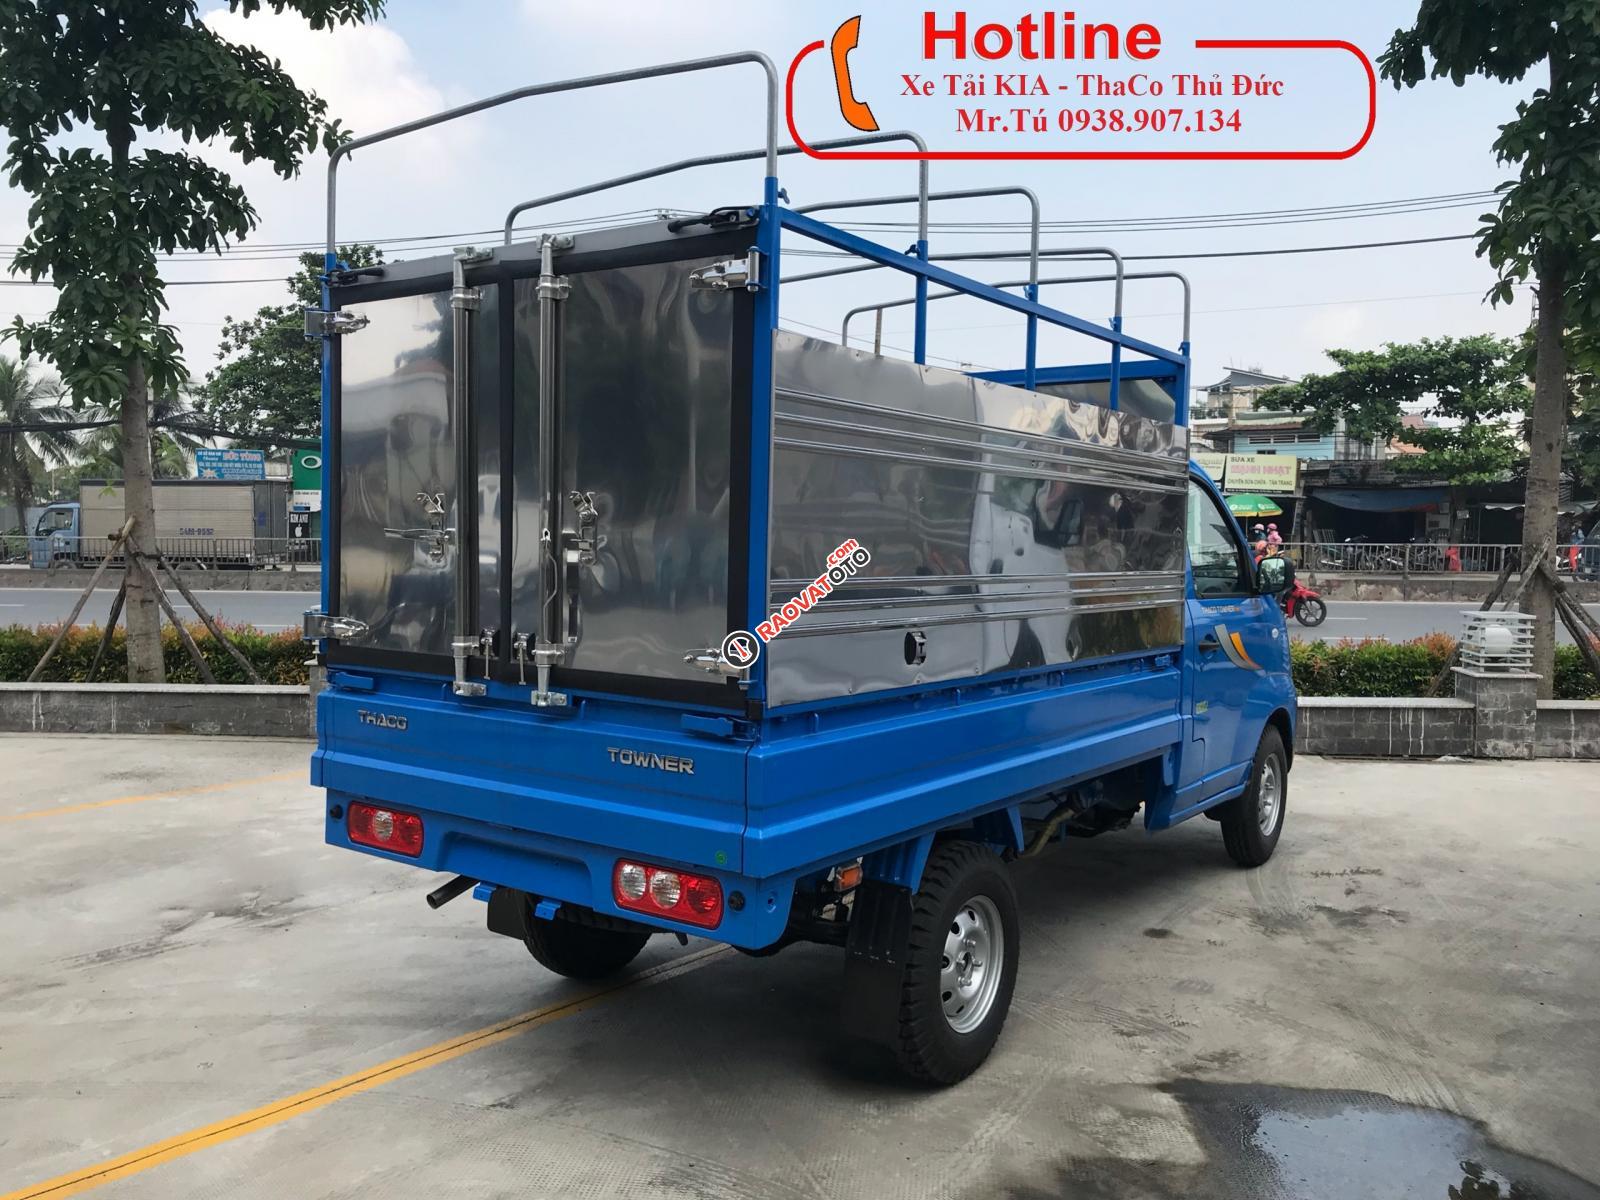 Bán xe tải Thaco Towner990 - KM 100% trước bạ - Xe tải 900 kg - tải trọng 990kg - trả góp 80% - TP HCM, LH 0938.907.134-3